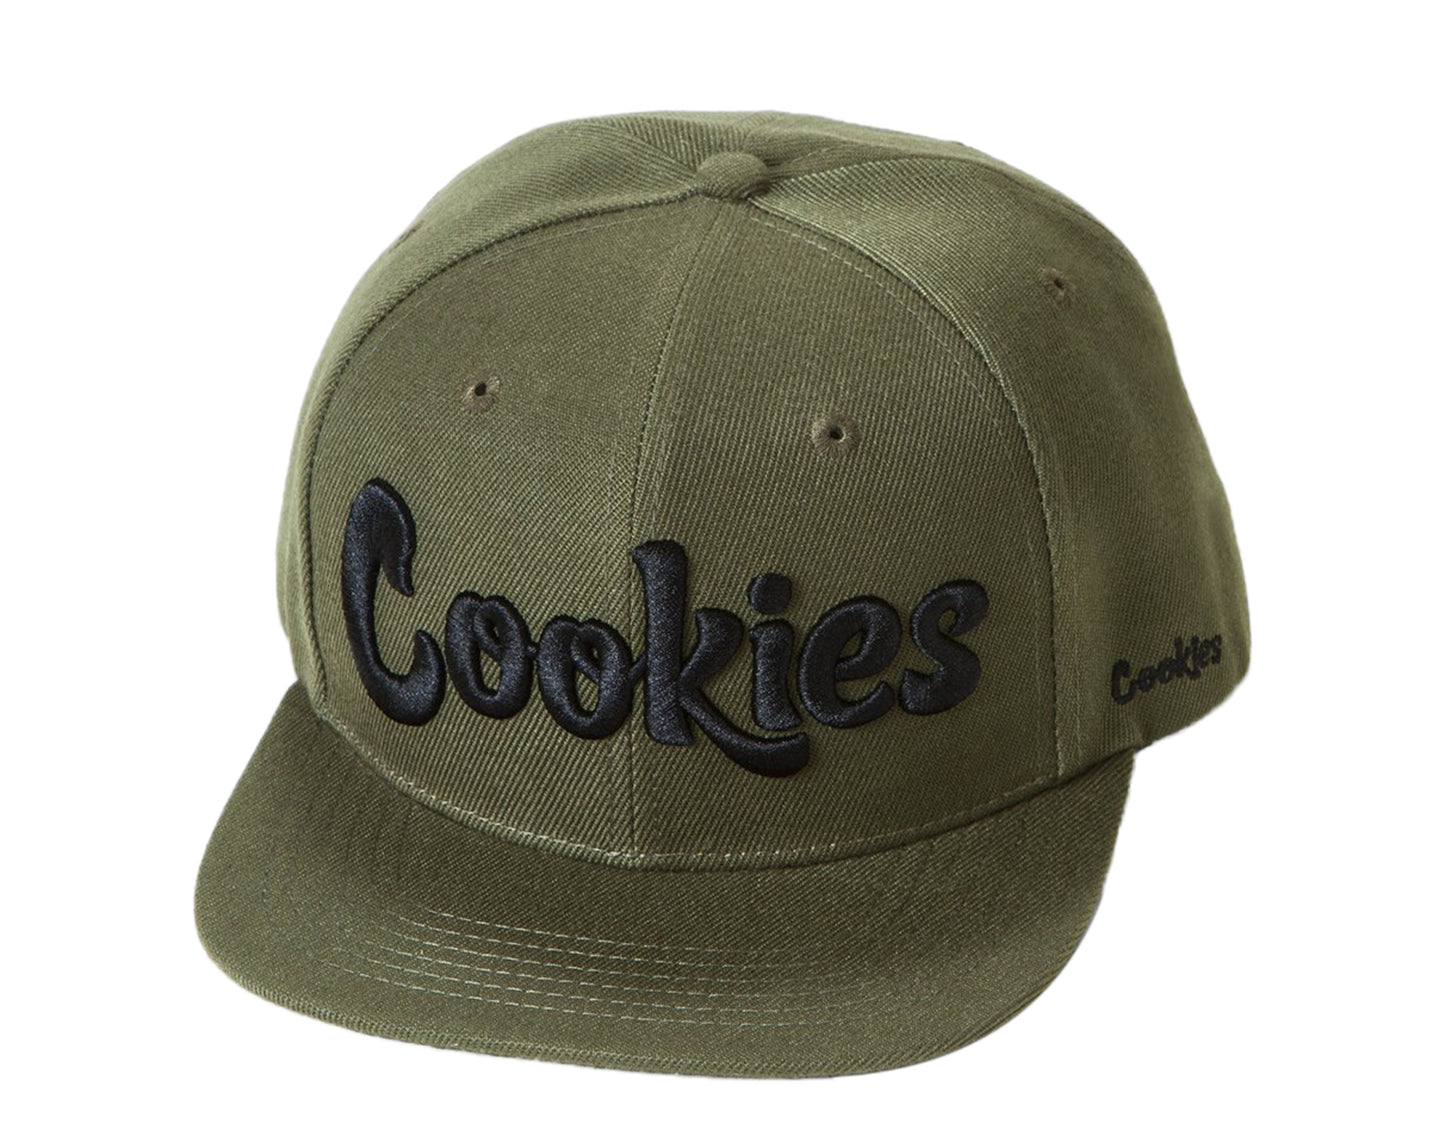 Cookies Original Logo Thin Mint Adjustable Olive/Black Snapback 1546X4391-OLB